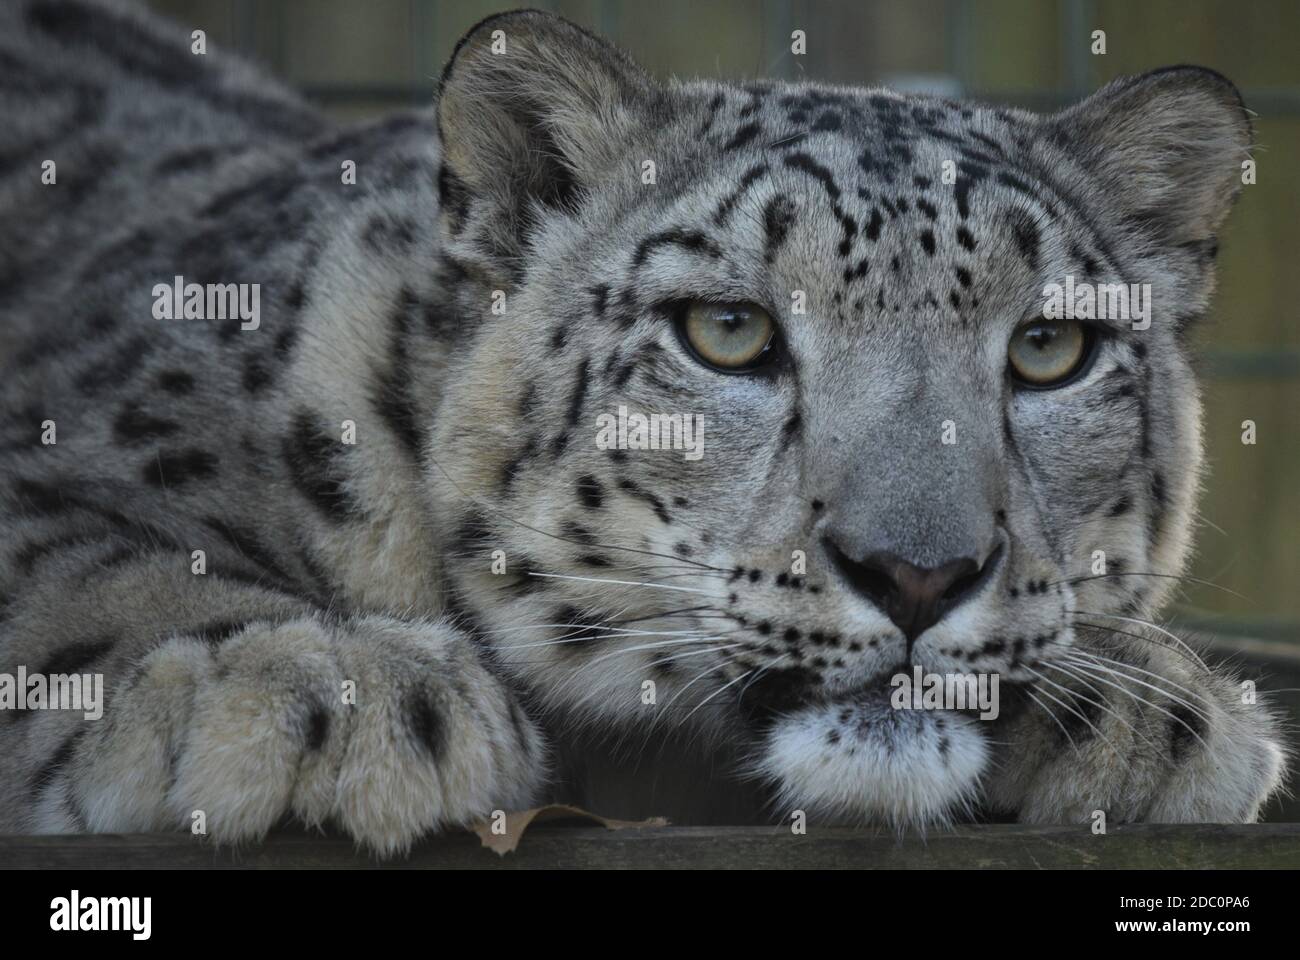 « maintenant léopard », « visage et pattes », « yeux des grands chats », « vous regarder », « conservation de la faune », « gros chat asiatique », « carnivore », « intéressé » Banque D'Images